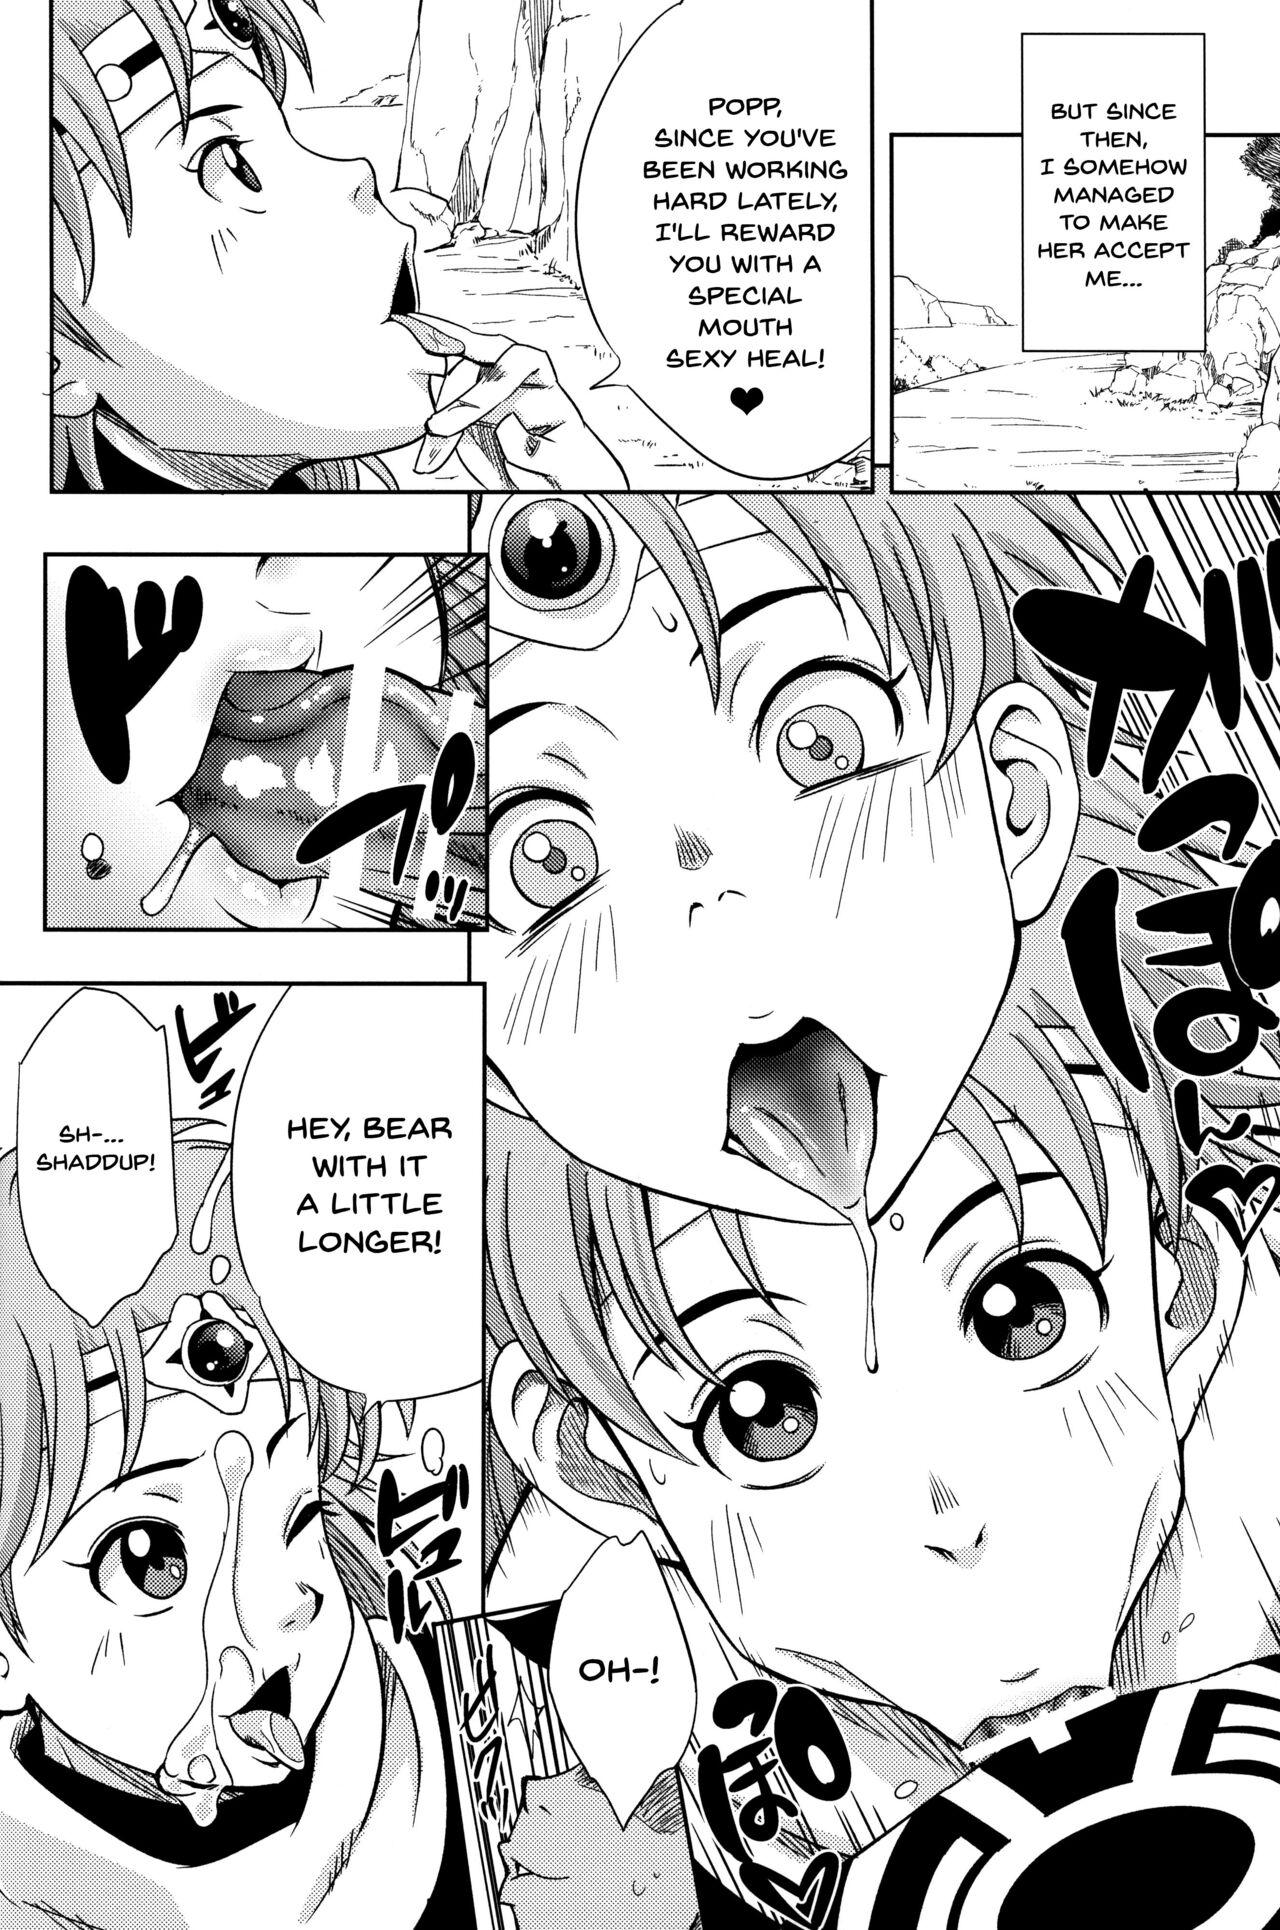 Fudendo Pink no Bakajikara | Strong Pink Haired Girls - Naruto Dragon quest dai no daibouken Oldvsyoung - Page 7